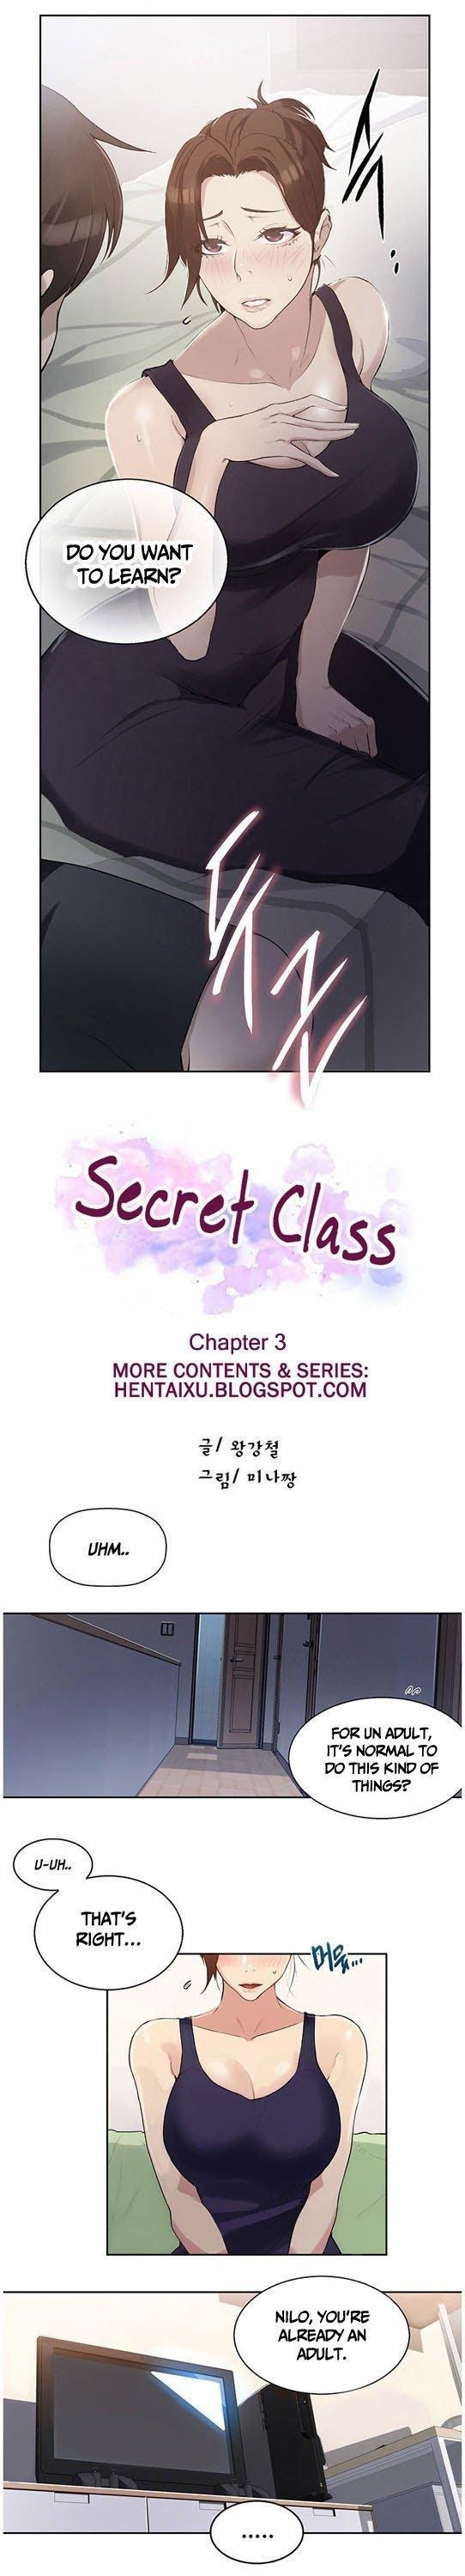 Secret Class Chapter 3 - Picture 1